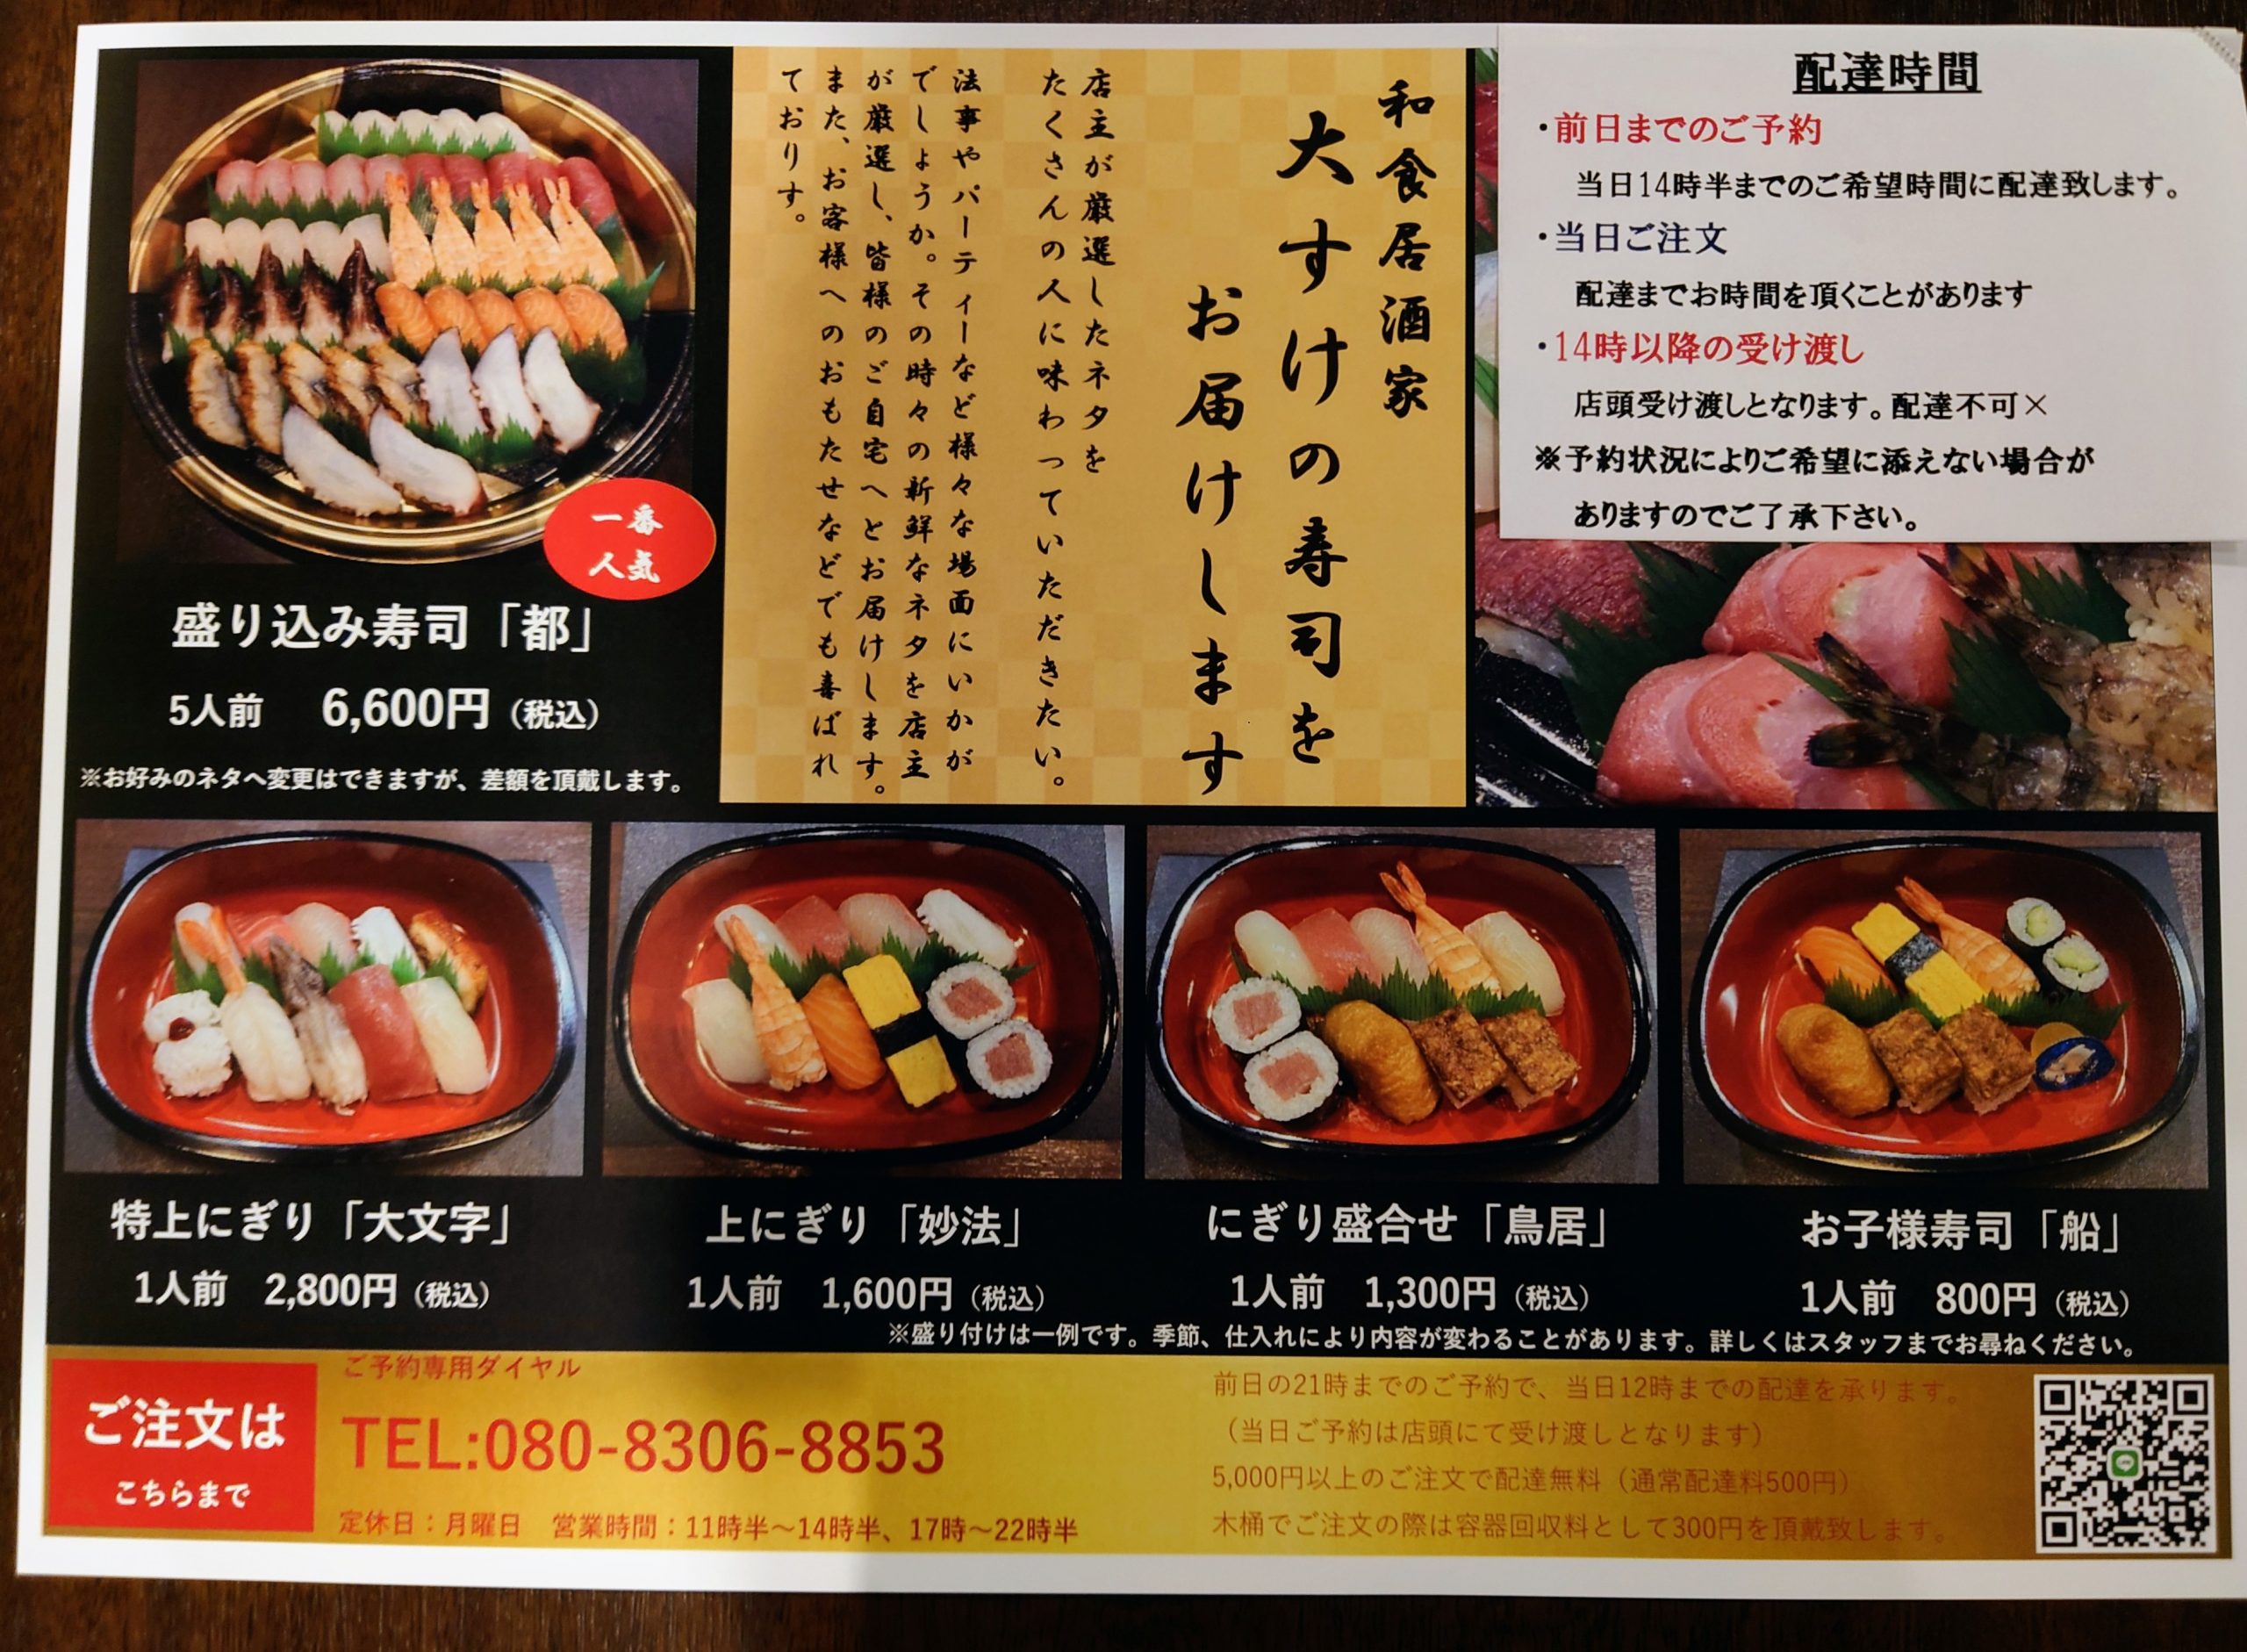 お寿司のメニュー。ご注文の時に名前[大文字]とお伝え頂くとスムーズにご注文して頂けます。